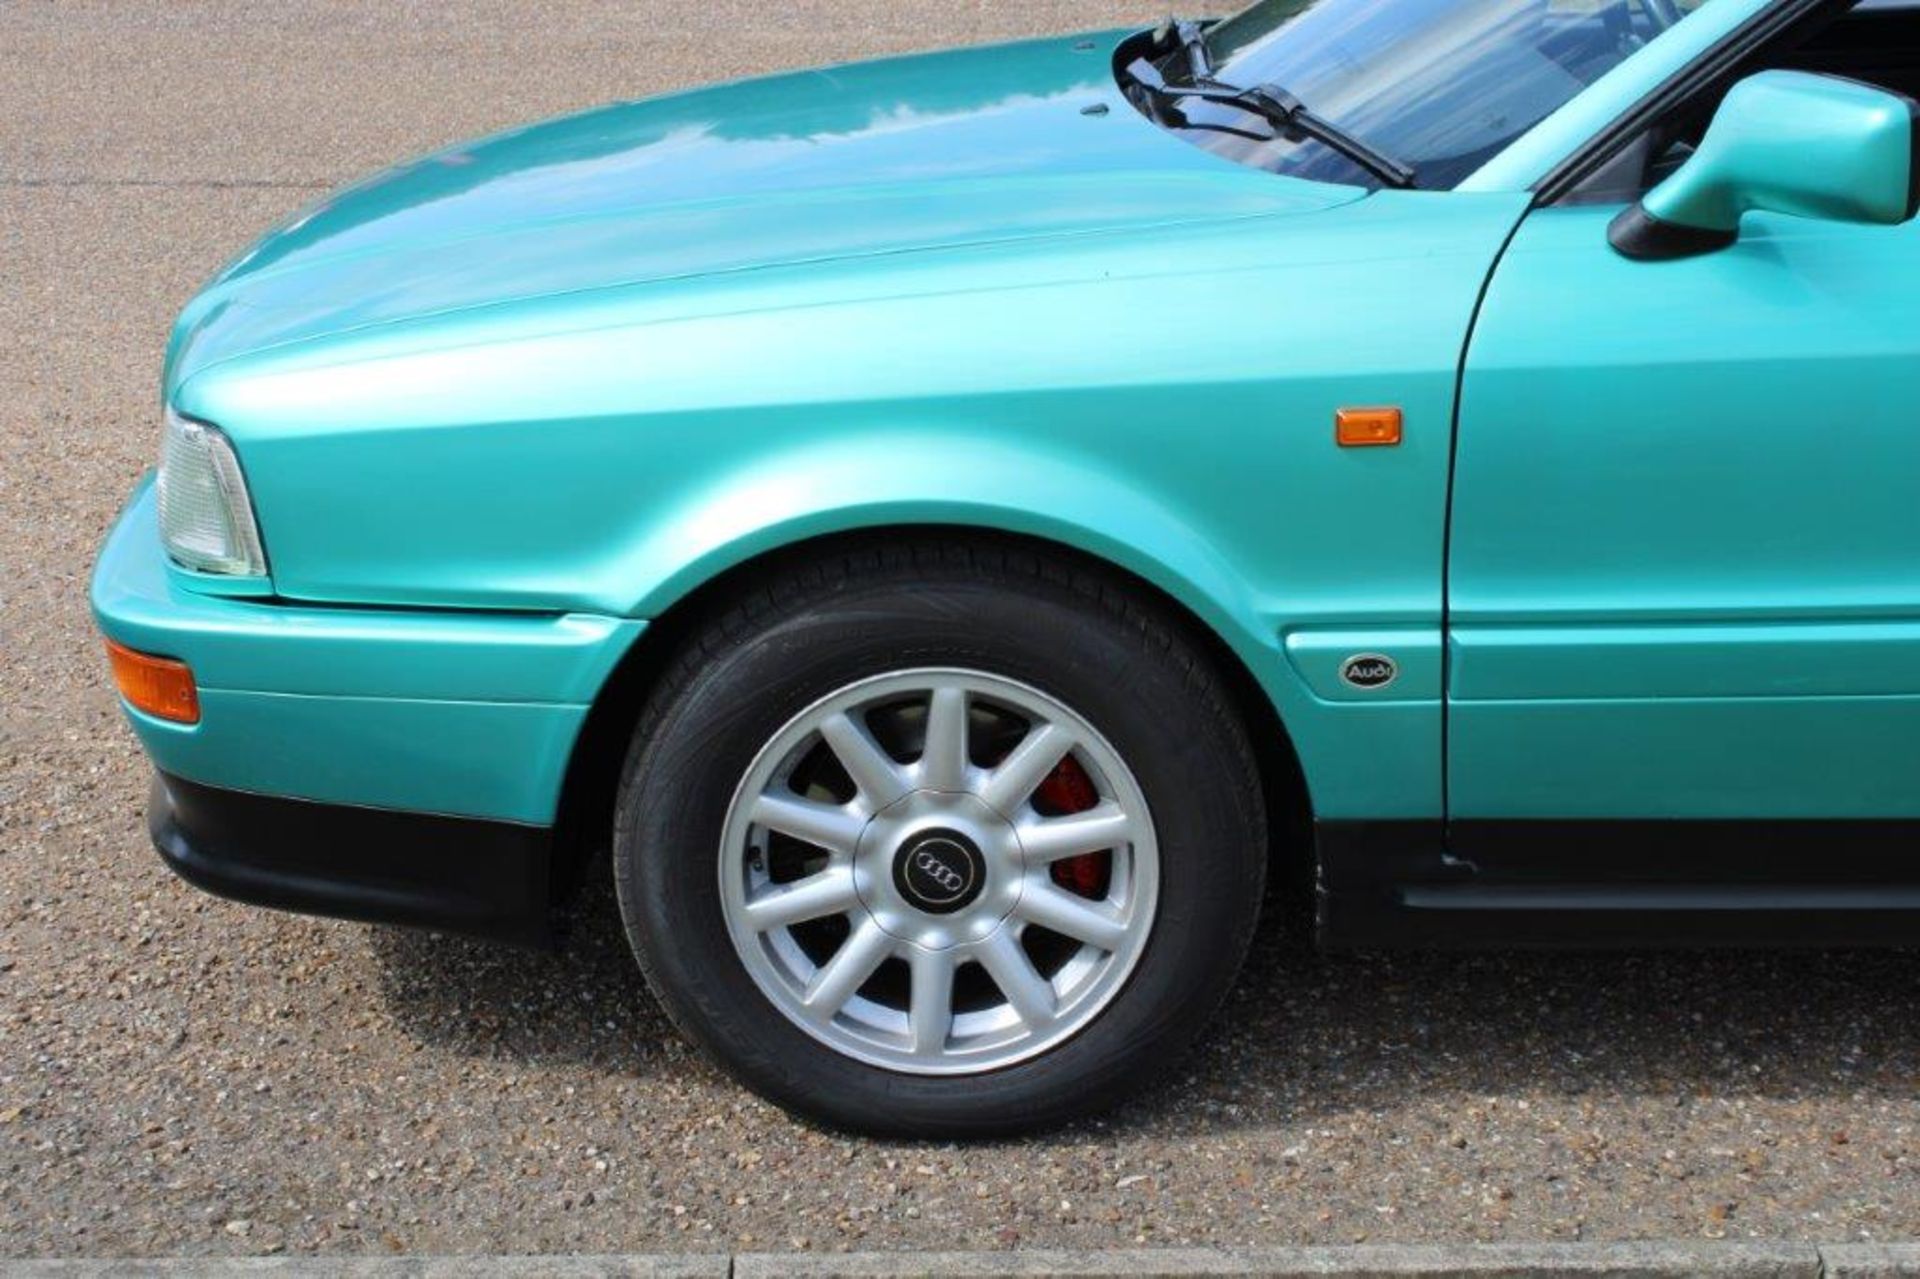 1994 Audi Coupe 2.6E - Image 17 of 20